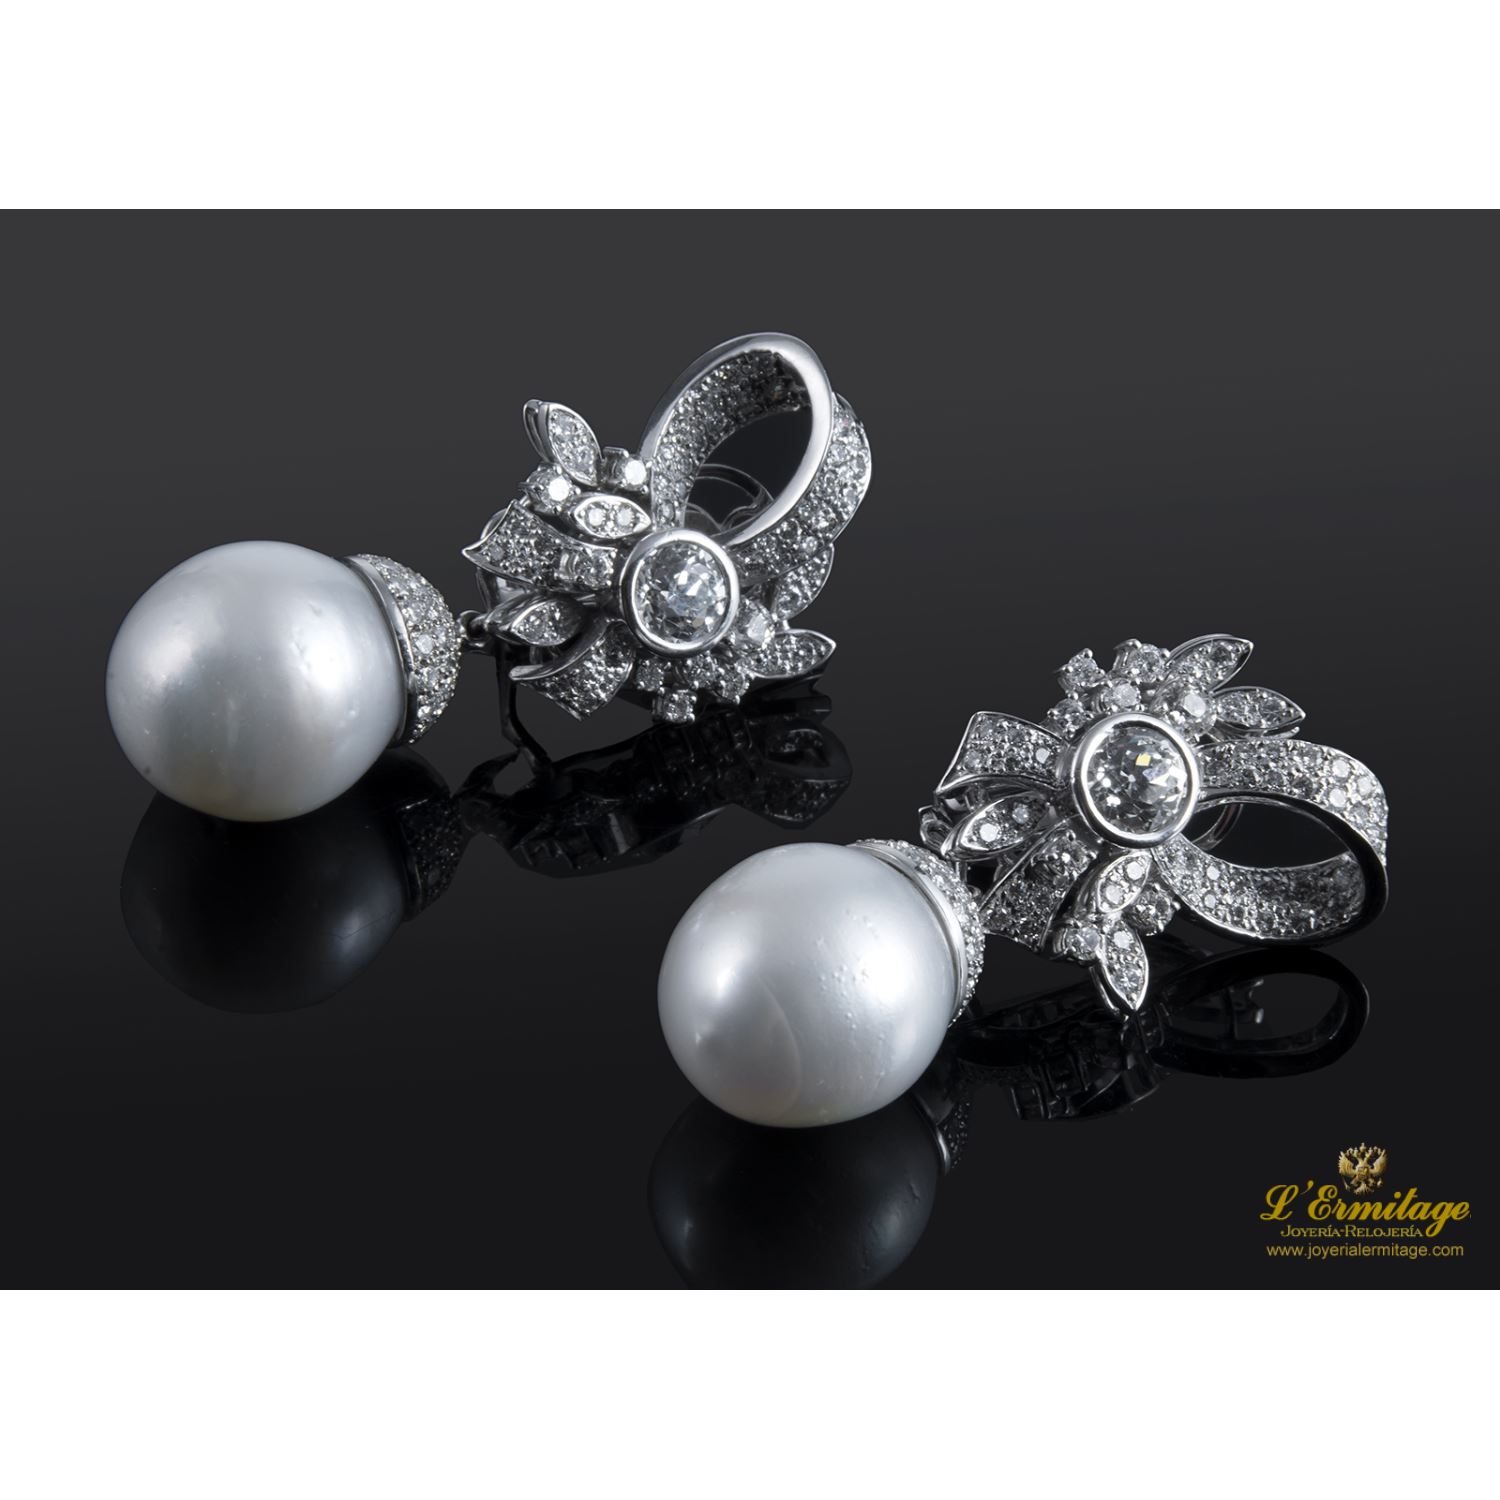 Pendientes desmontables en forma de lazo realizados en oro blanco. Presenta perlas australianas y brillantes.